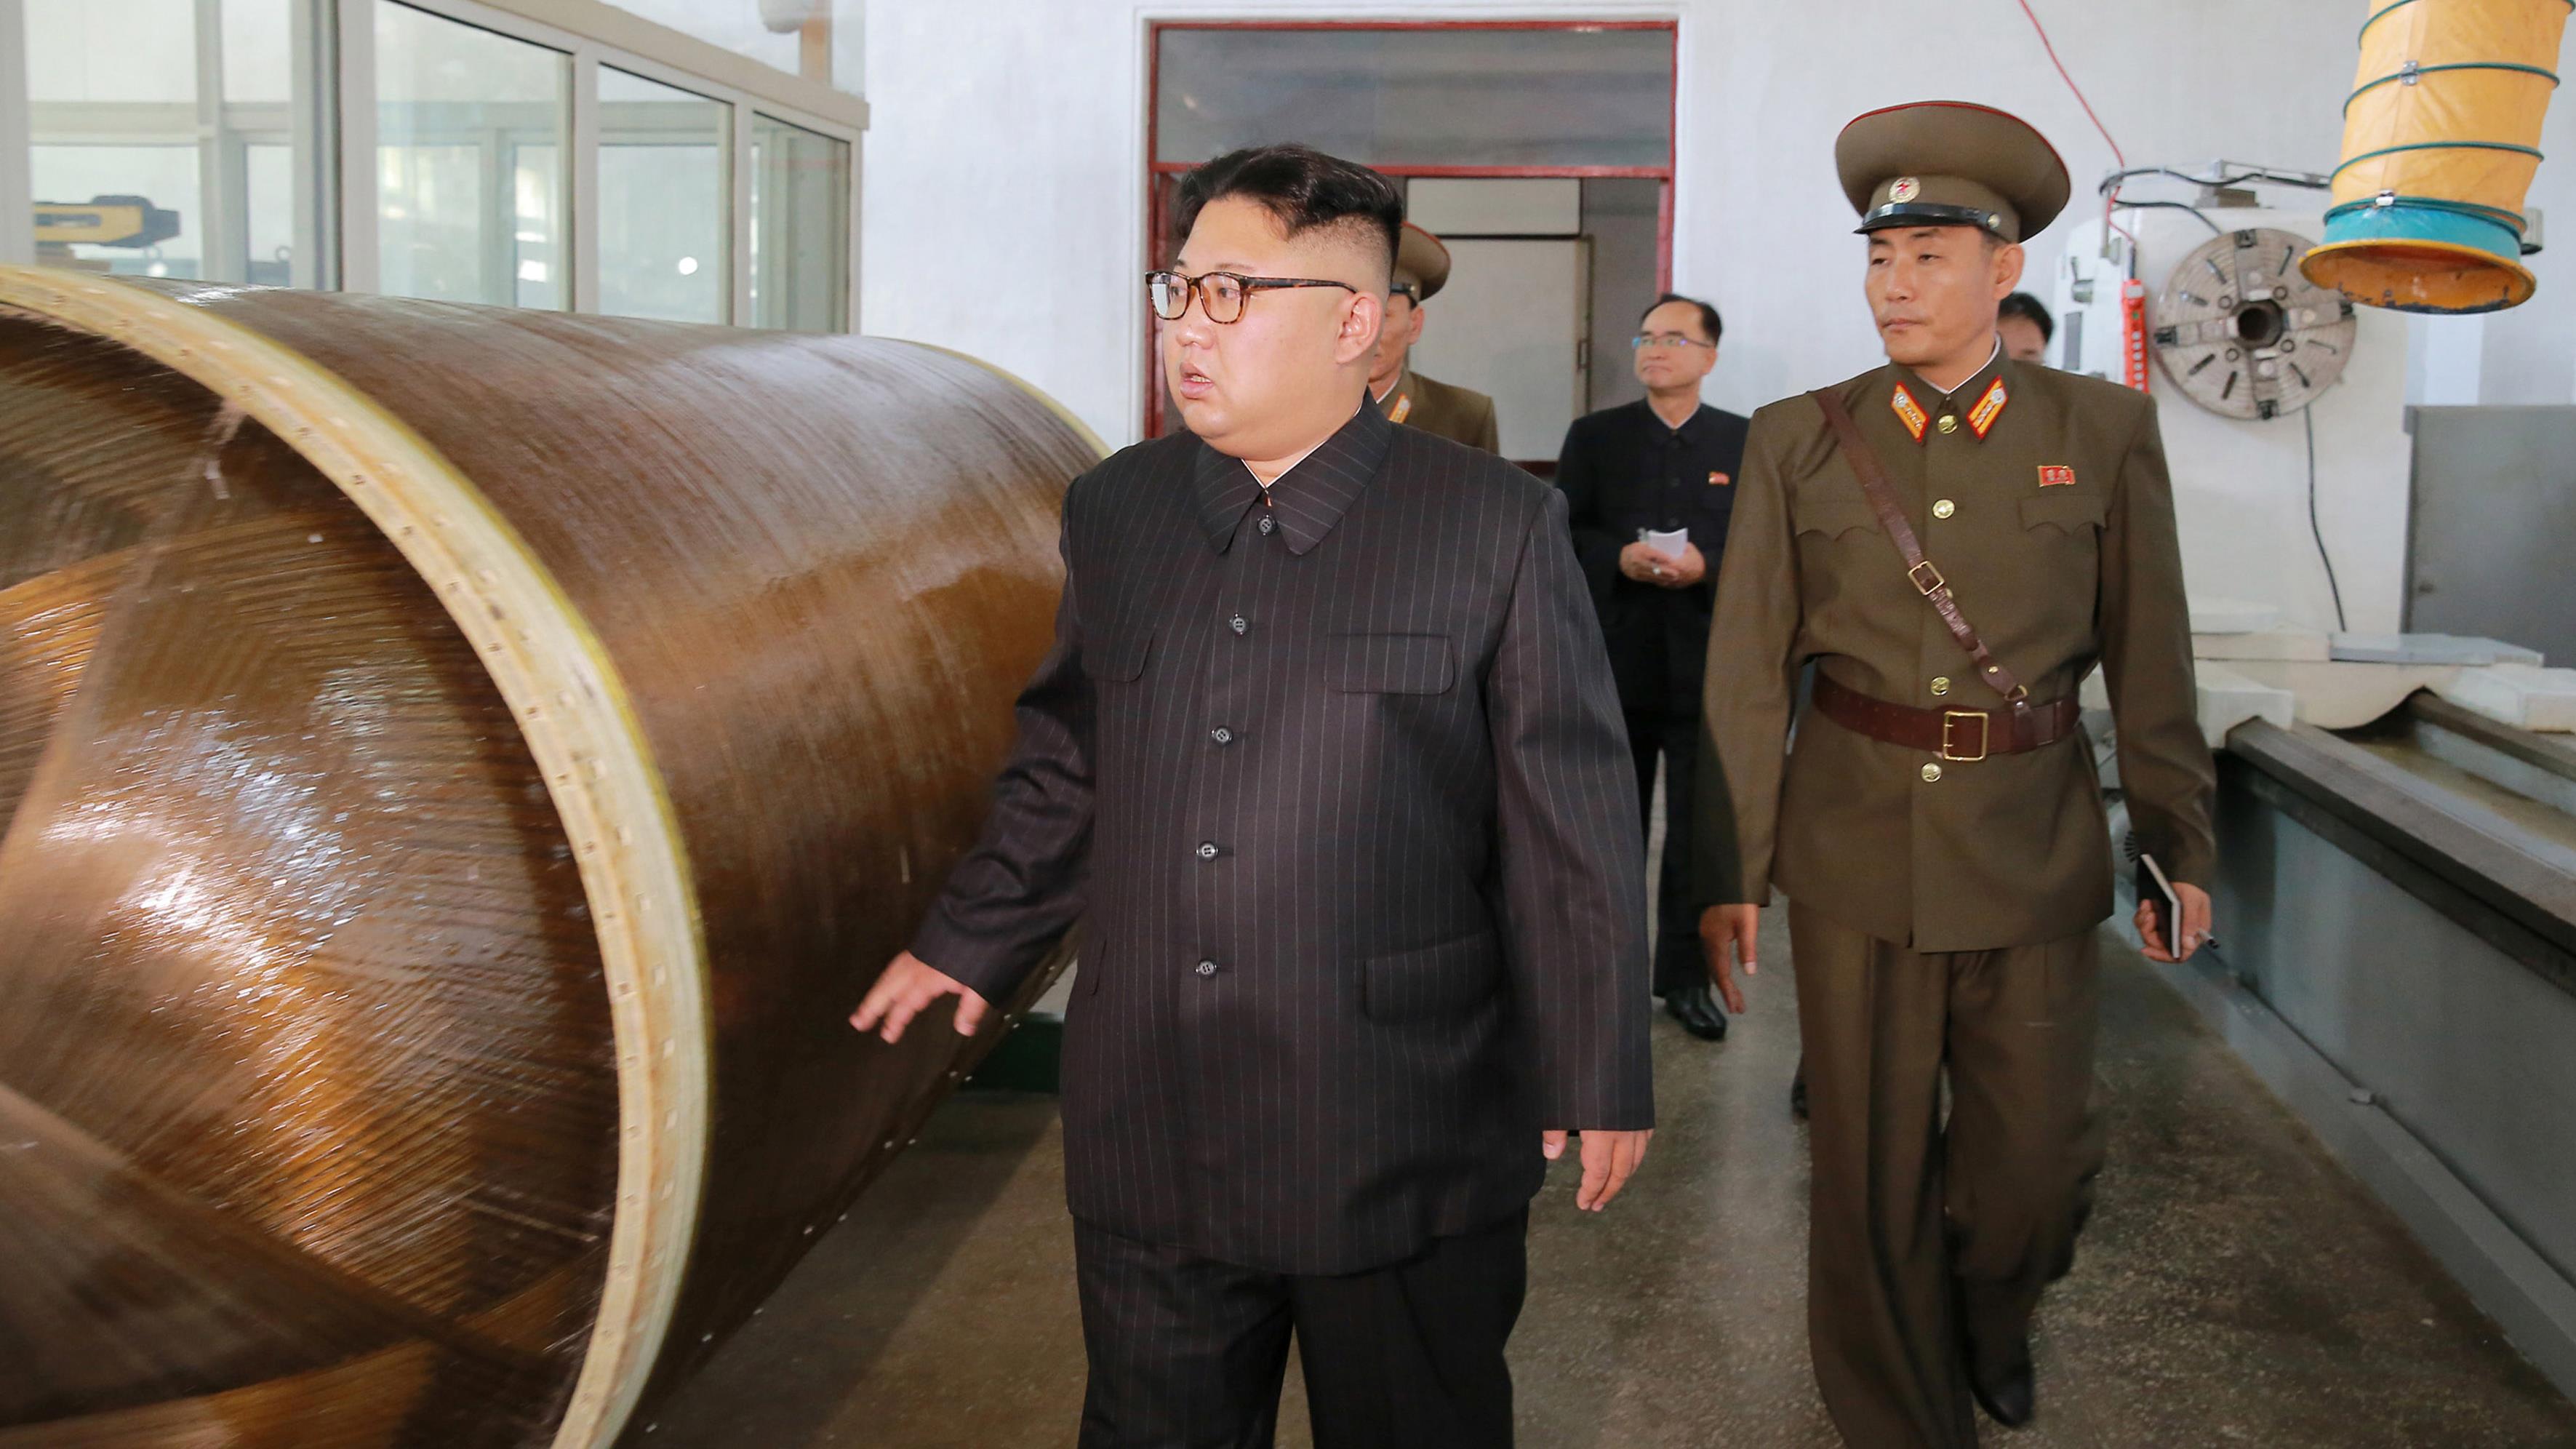 Le dernier missile nord-coréen capable d'atteindre l'île américaine de Guam